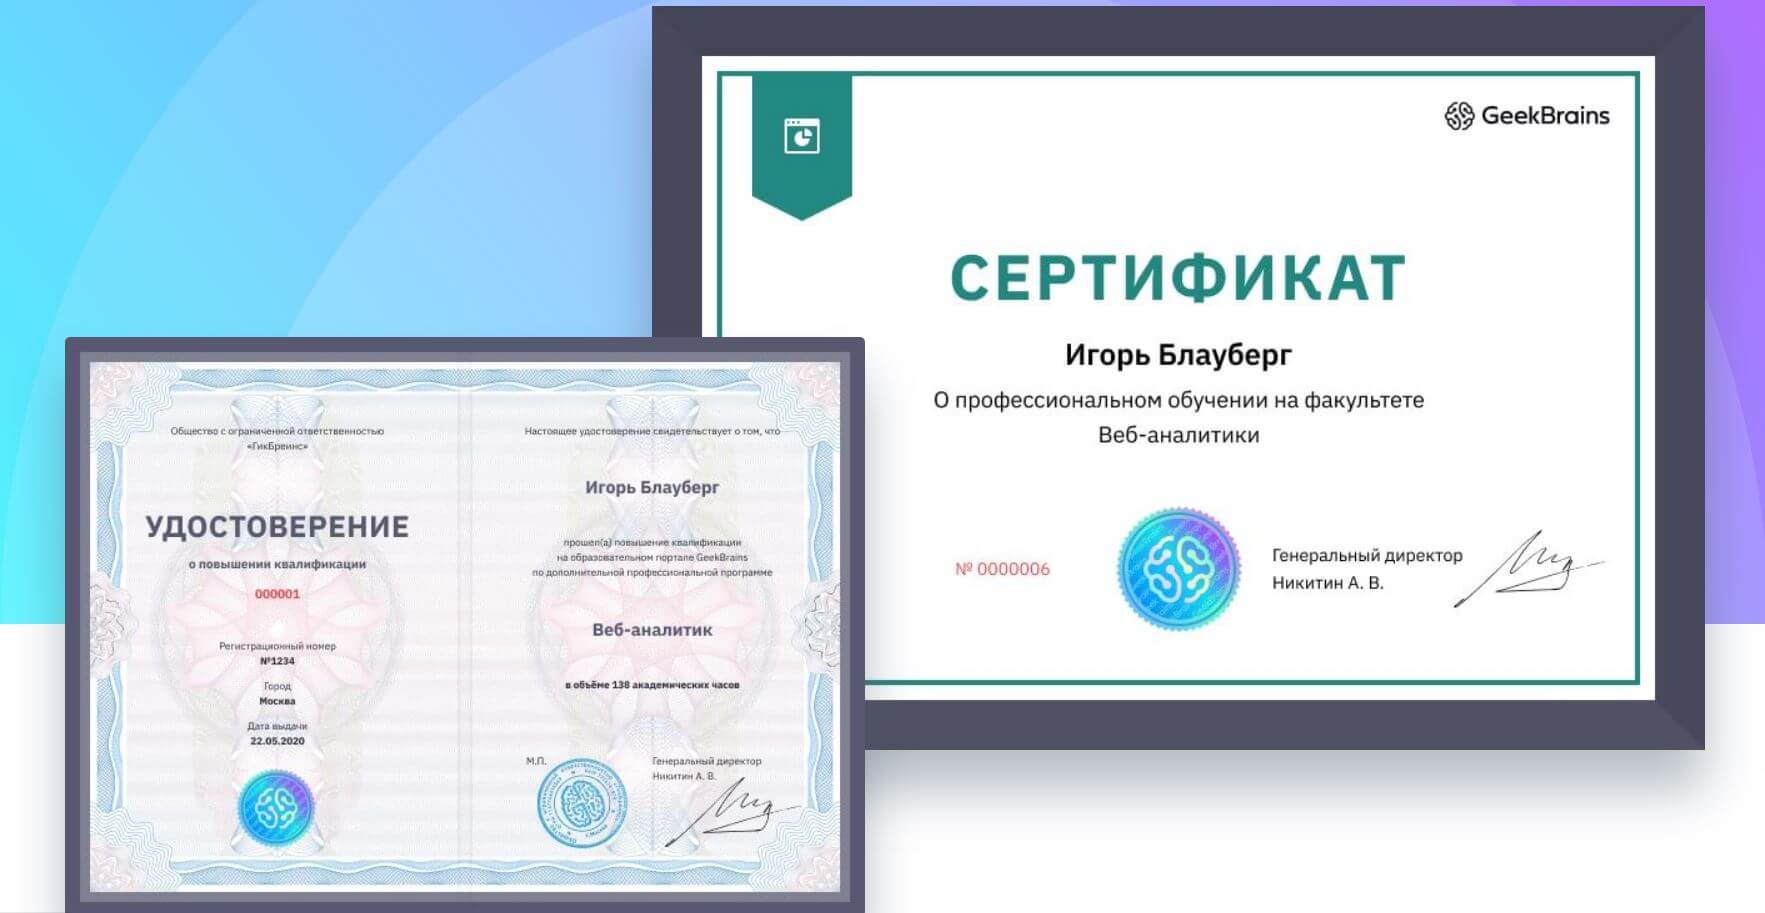 Как выглядит диплом или сертификат GeekBrains